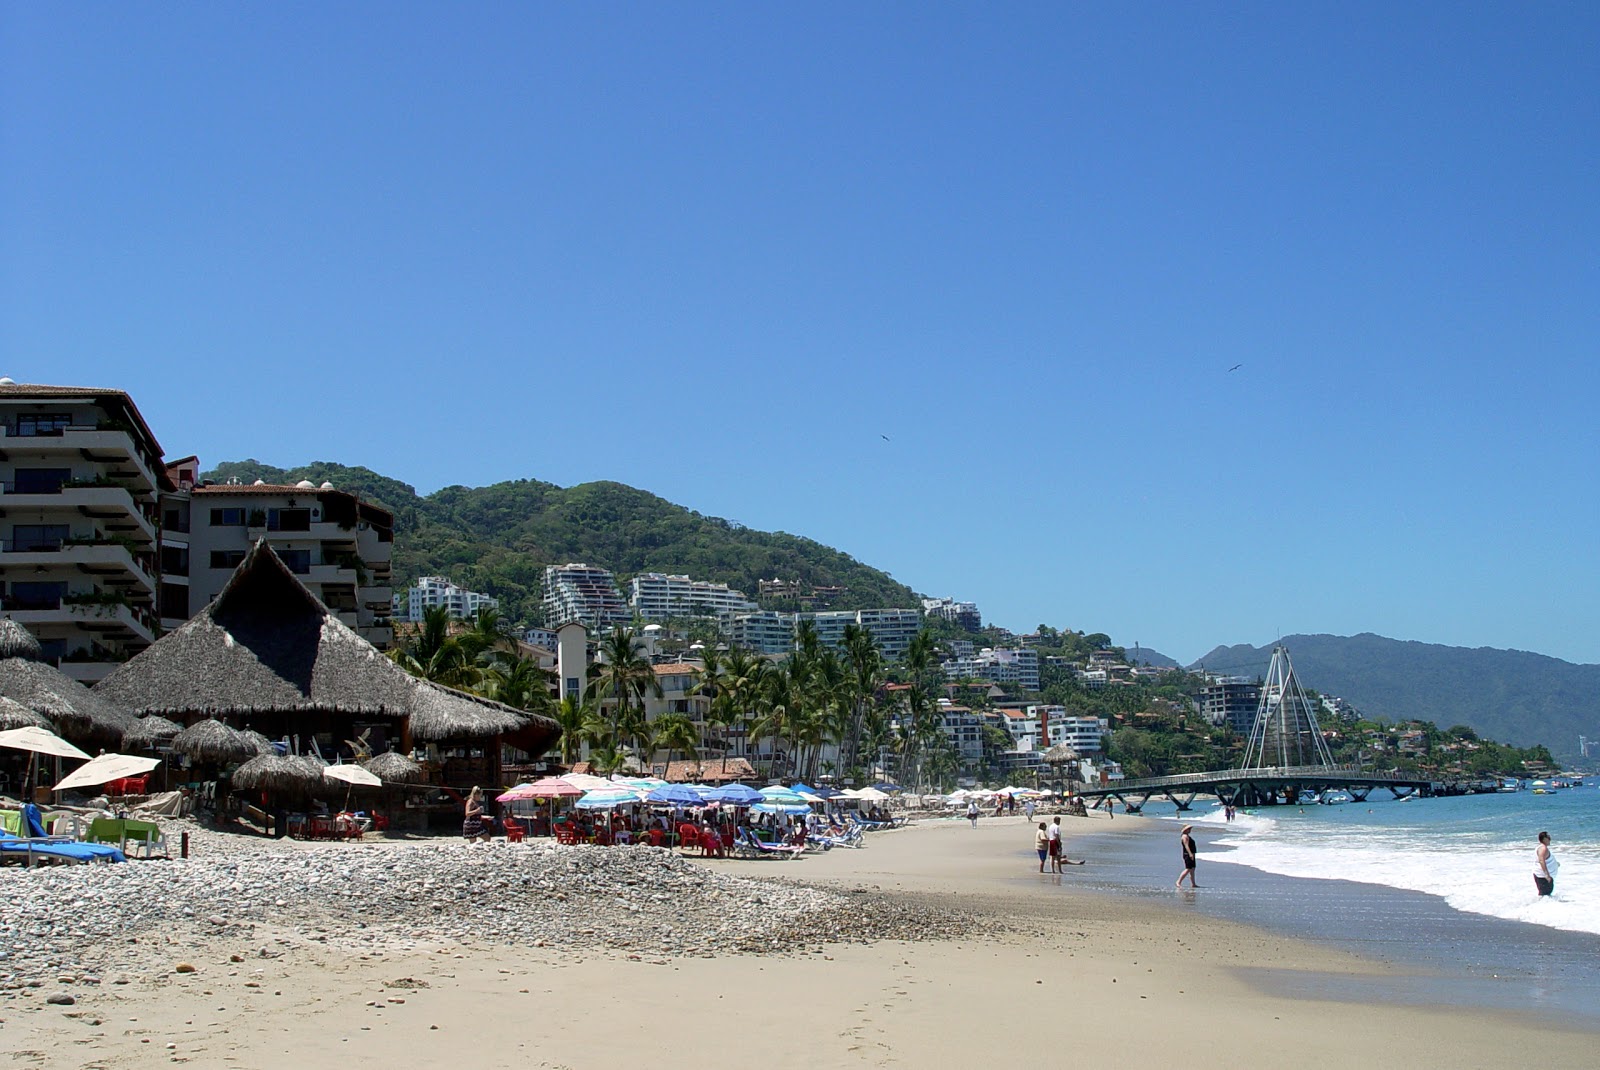 Olas Altas beach的照片 - 受到放松专家欢迎的热门地点